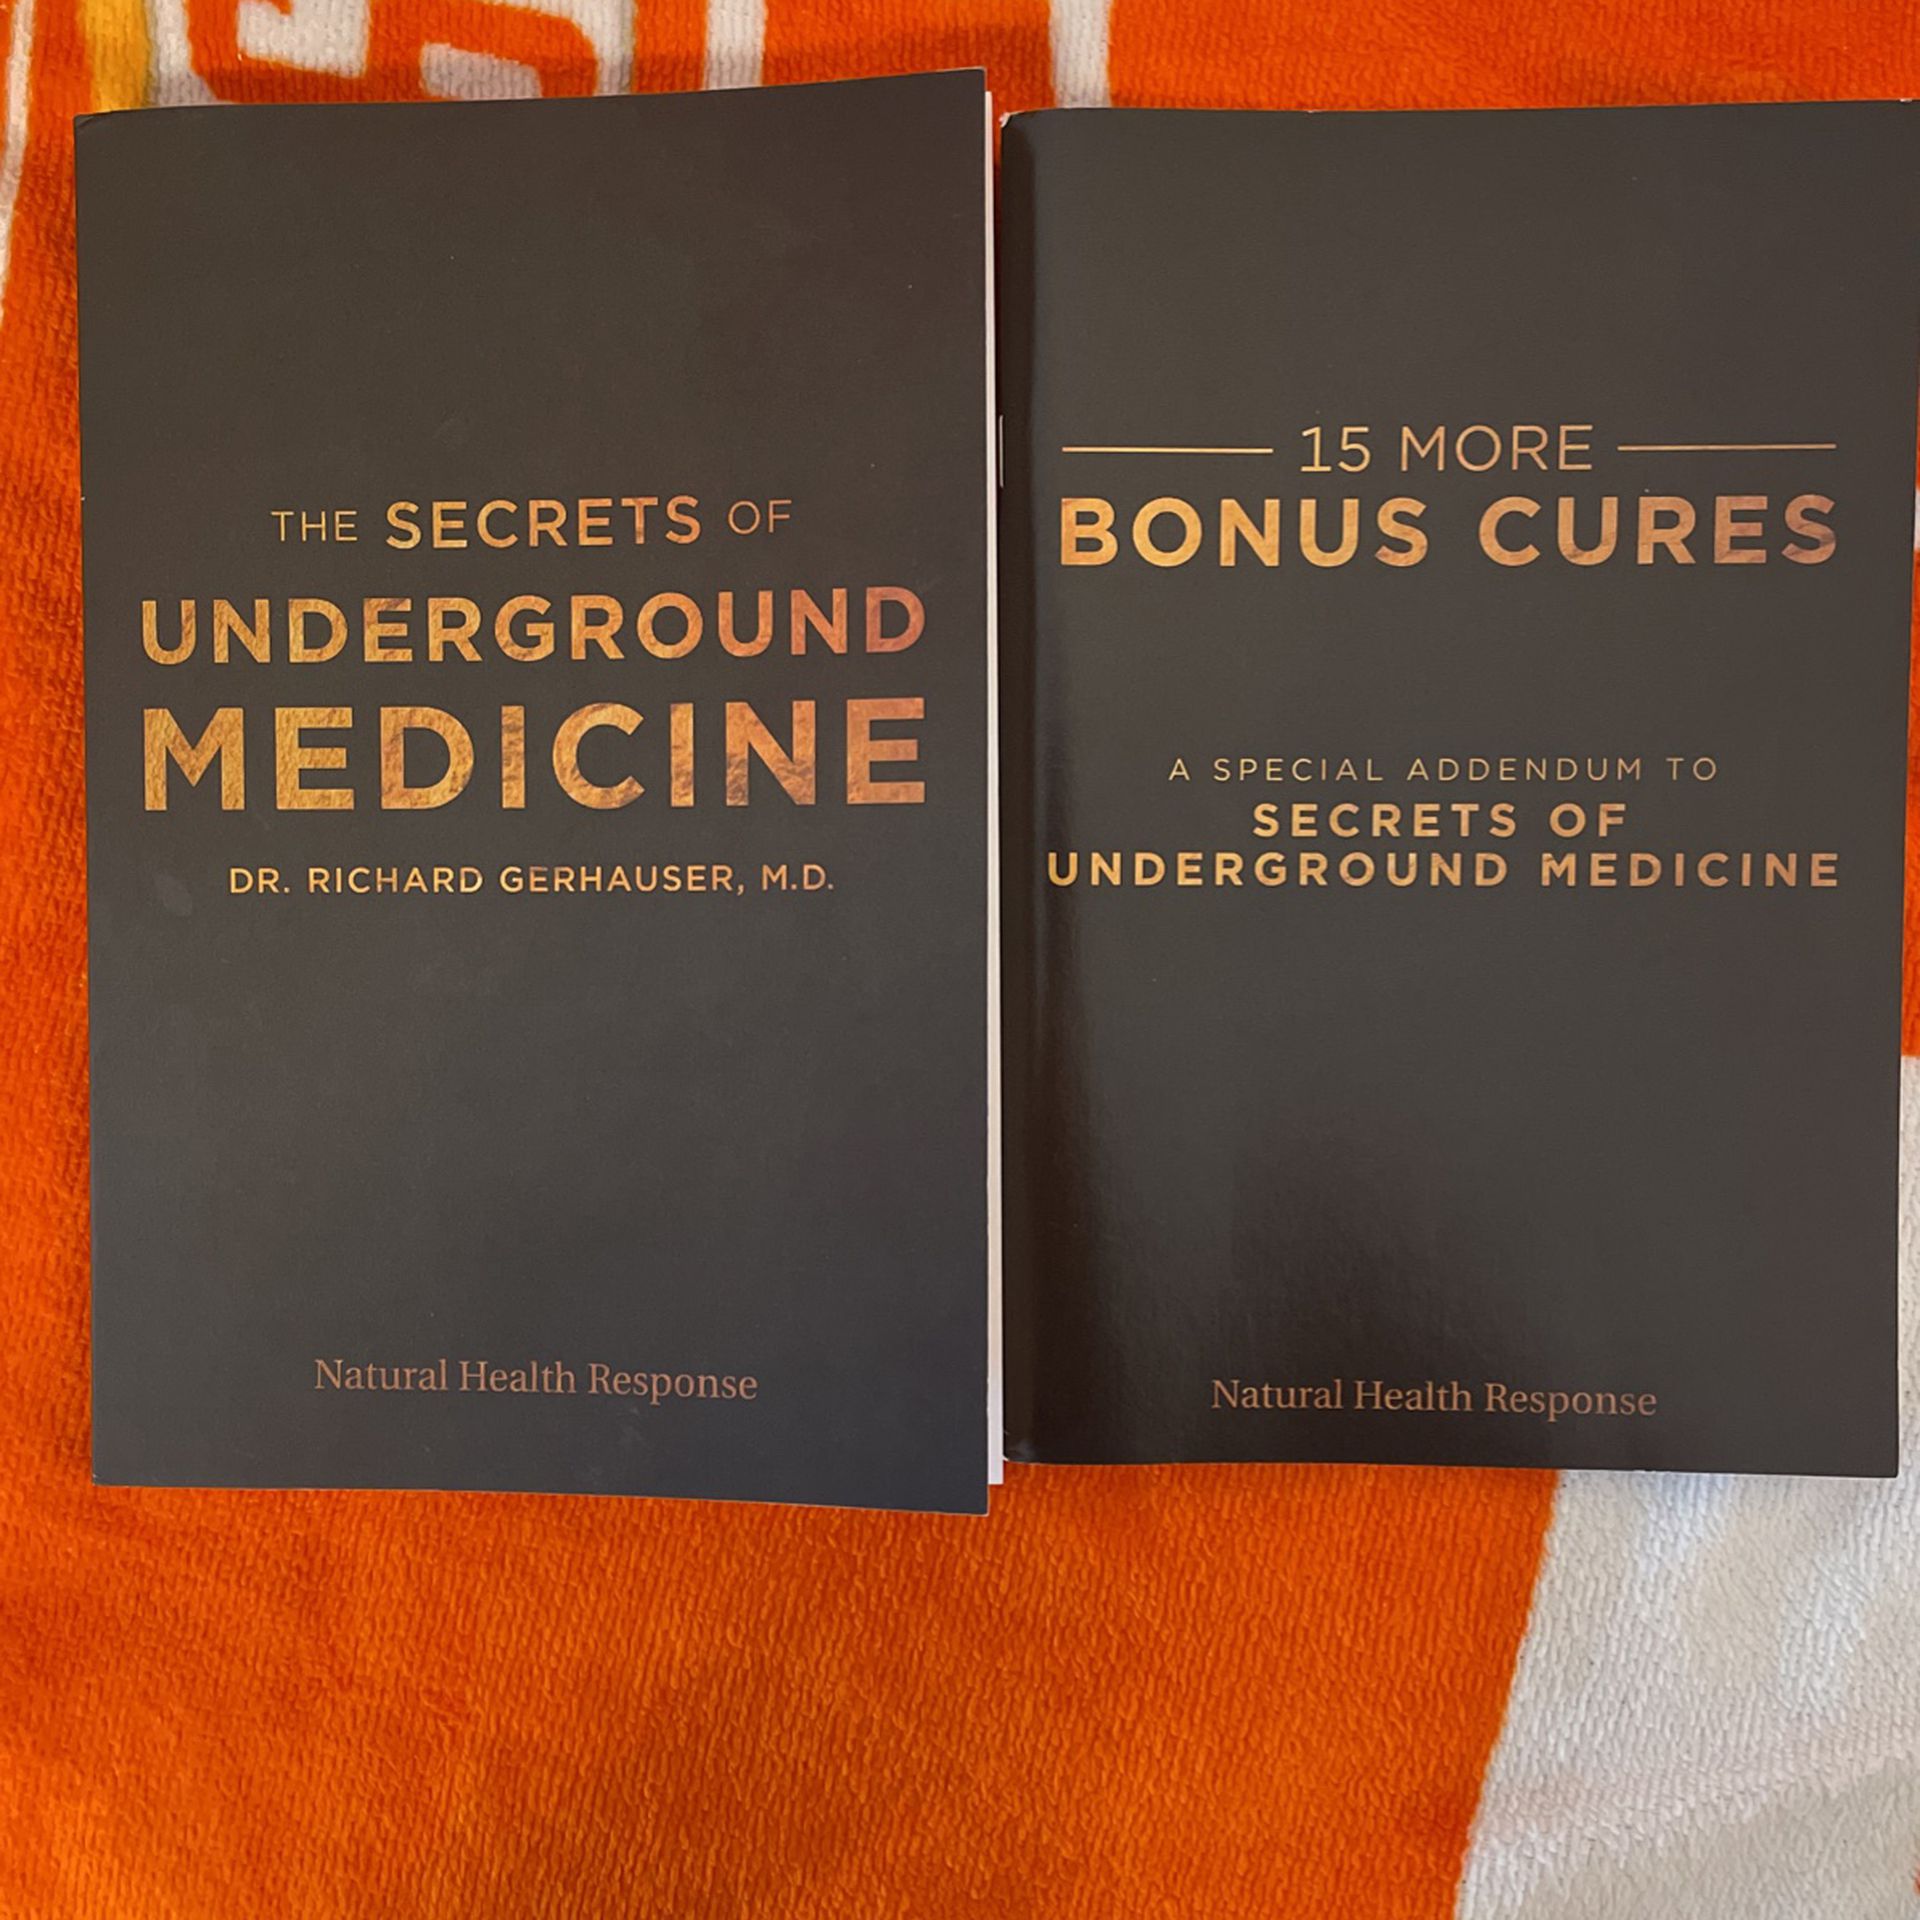 The secrets of underground medicine +15 more bonus cures